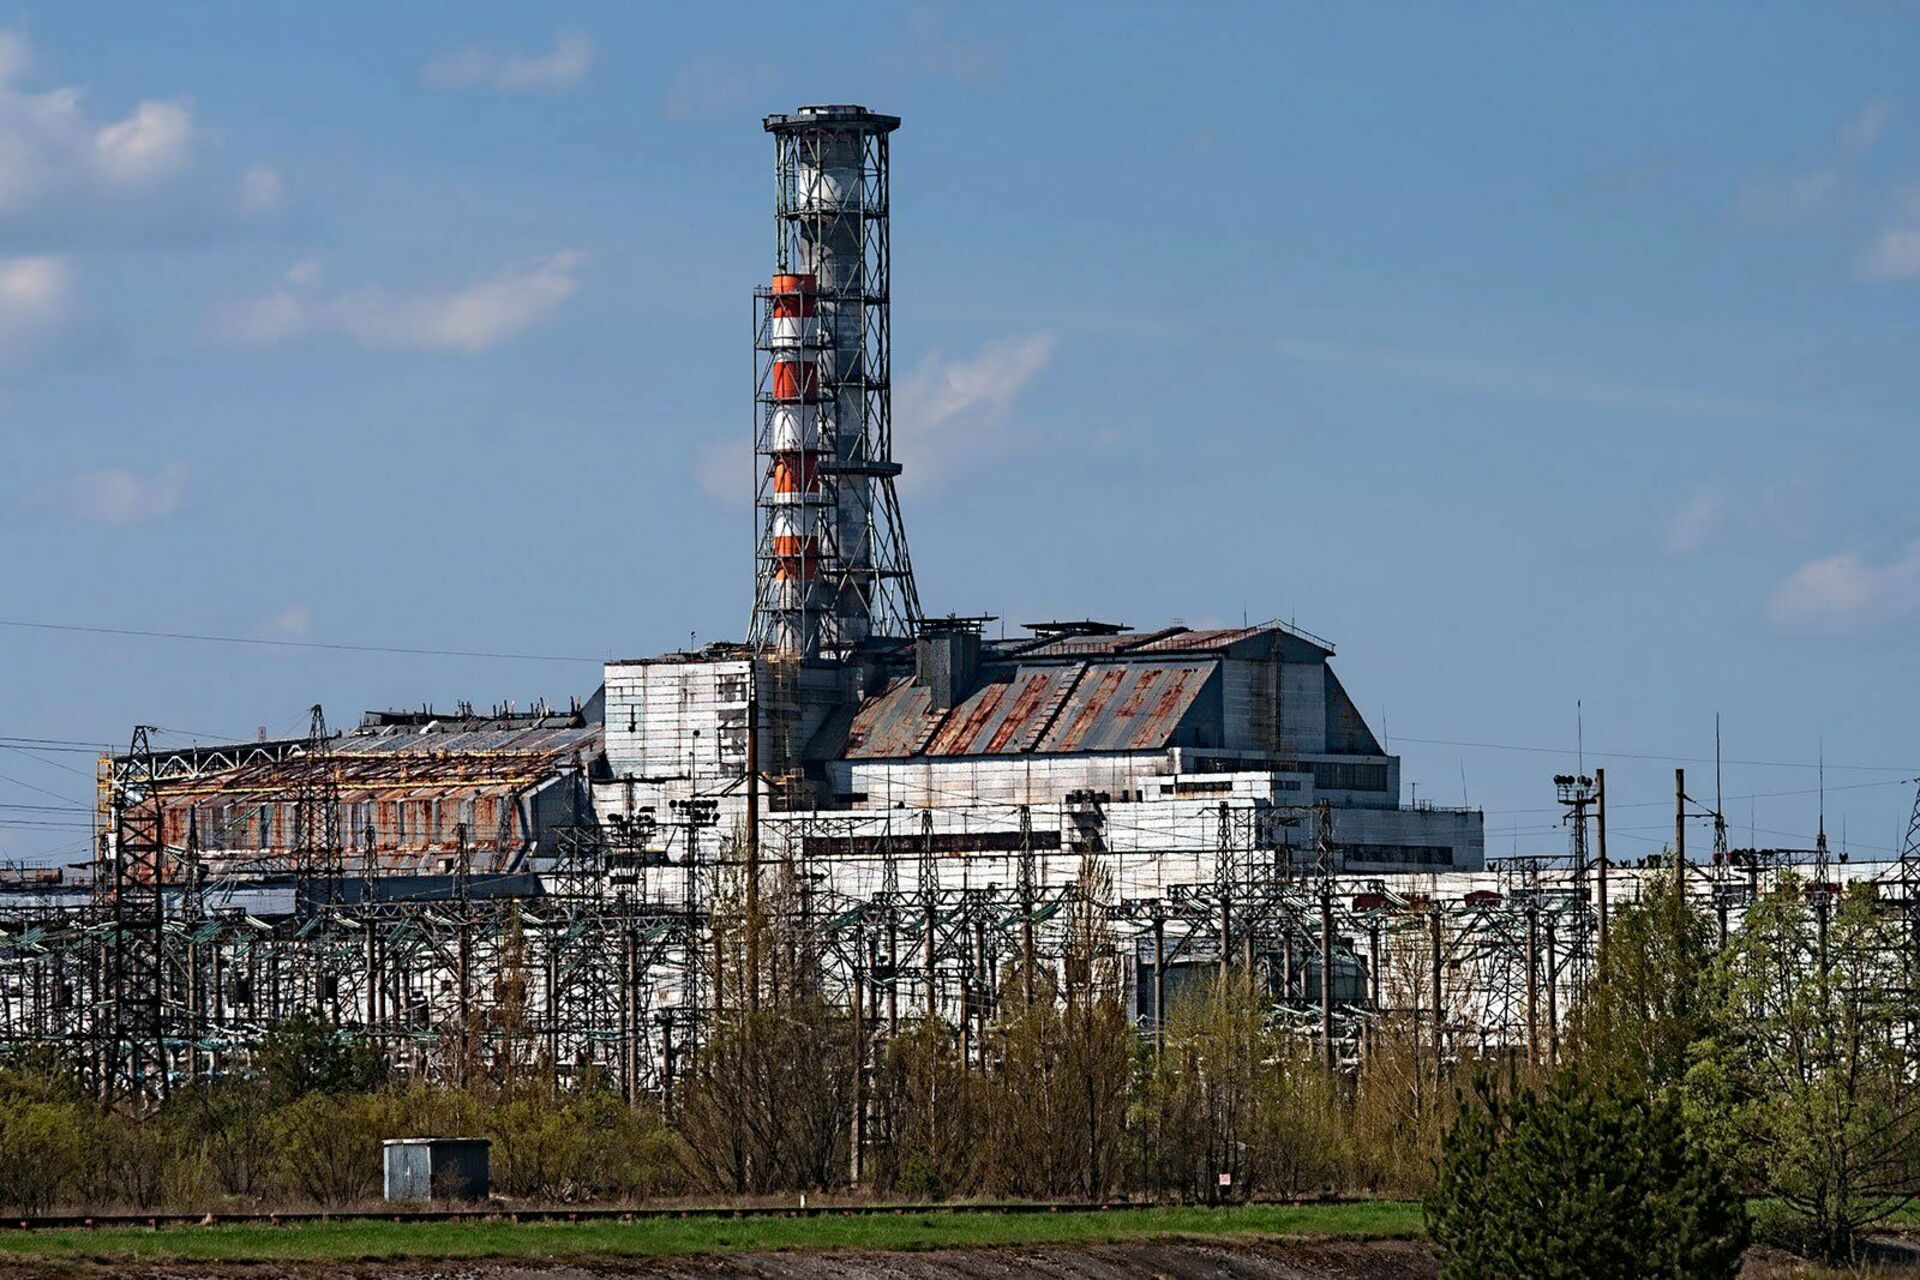 Http chernobyl. Атомная электростанция Чернобыль. Припять АЭС. Станция ЧАЭС Чернобыль. Припять атомная станция.